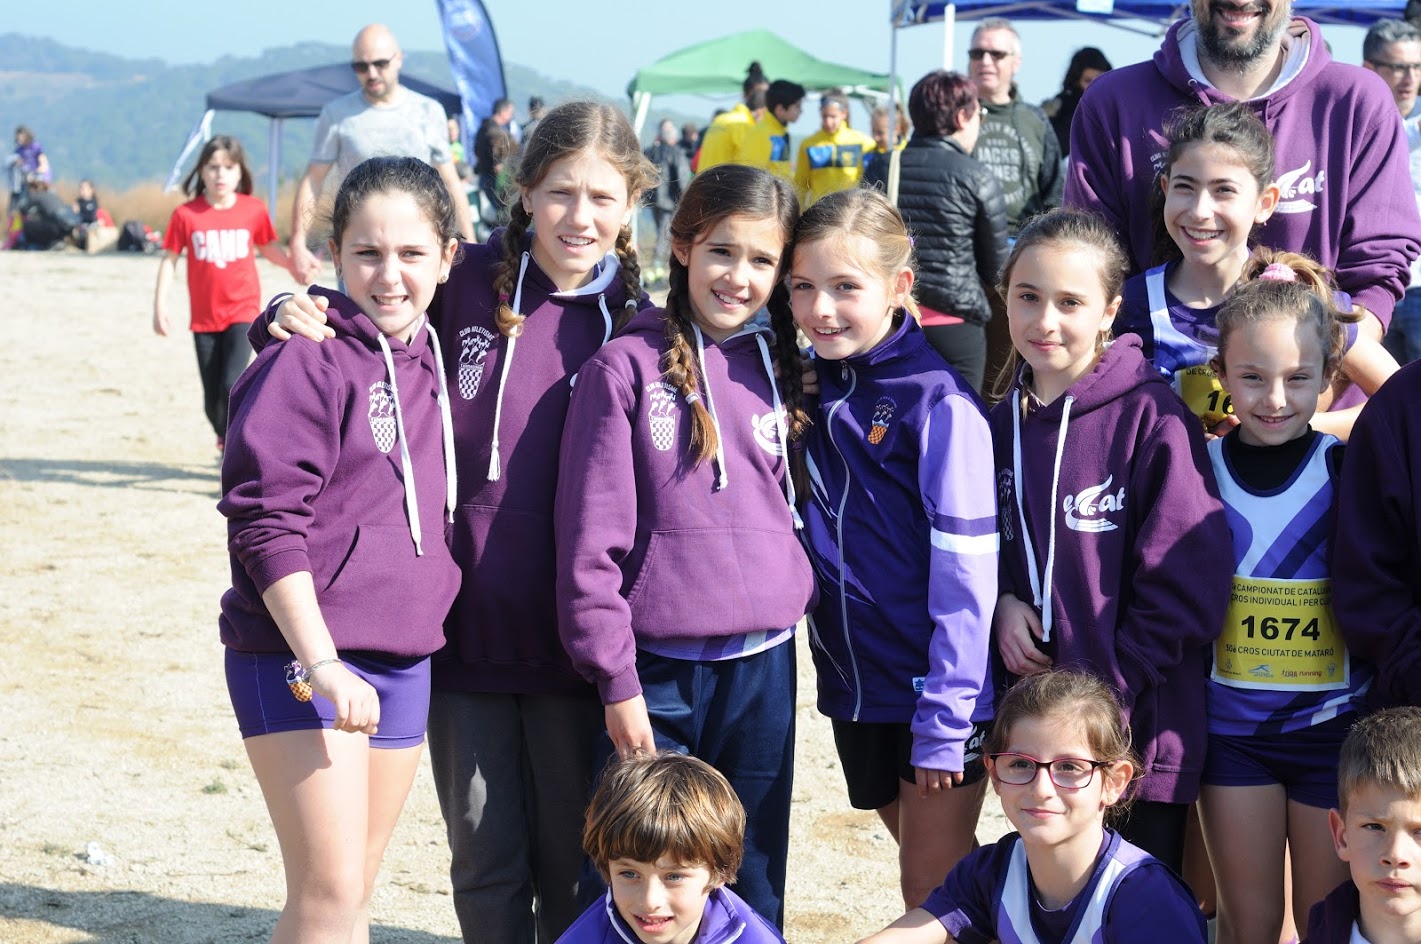 Les noies Sub12 del Club Atletisme Tarragona campiones de Catalunya i els nois Sub10 tercers en el Campionat de Catalunya de Cros celebrat a Mataró